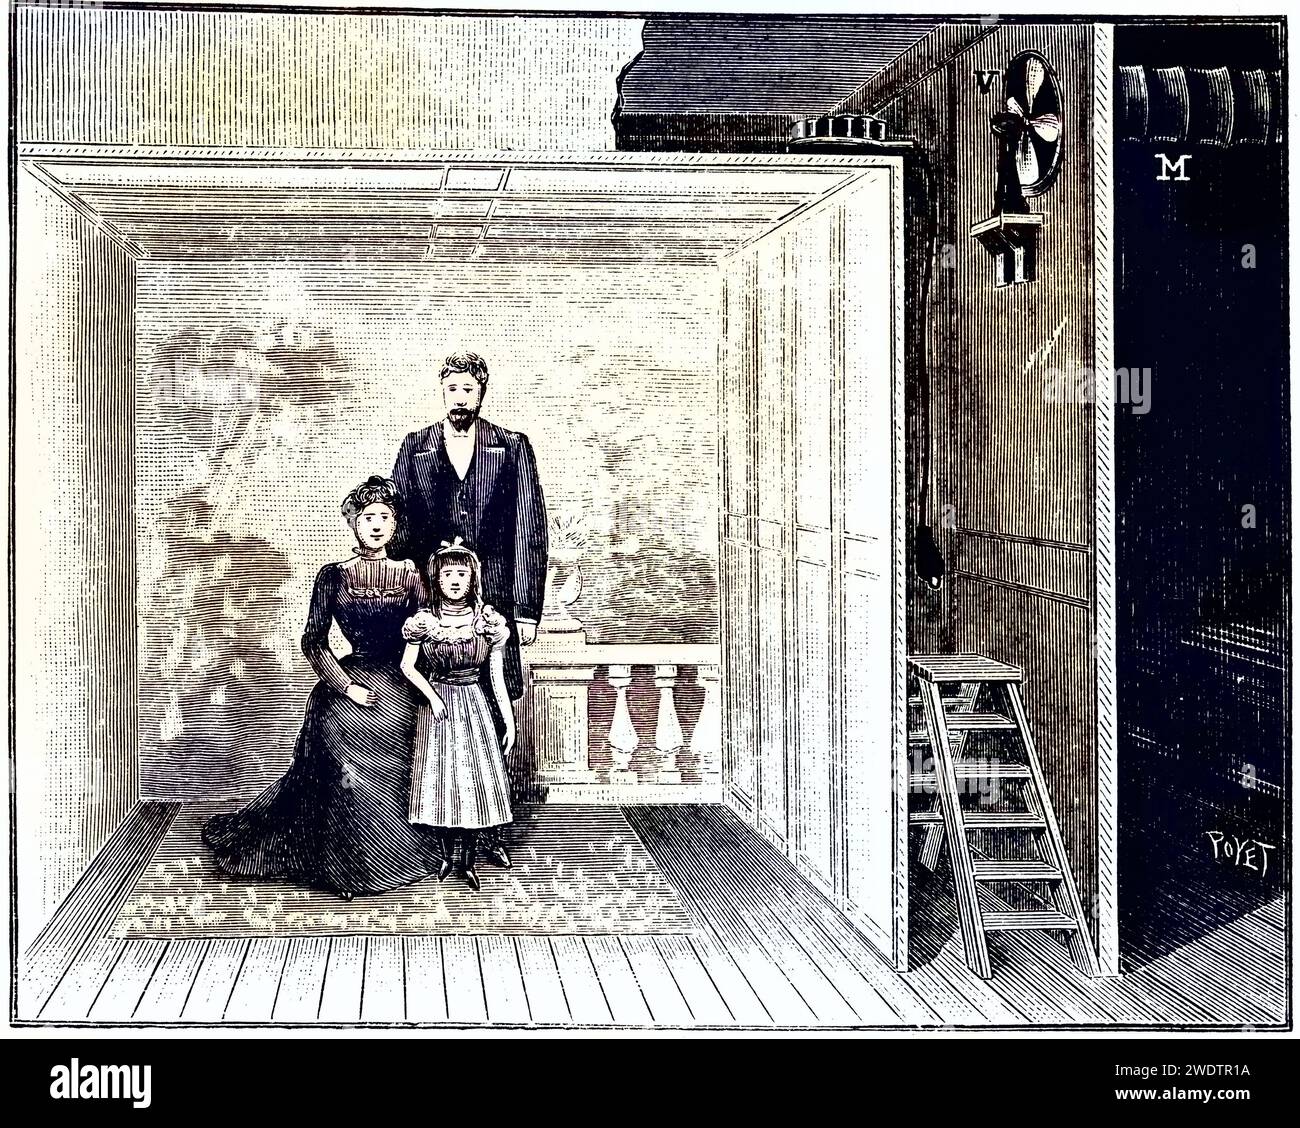 Boyers Fotostudio, ein hölzernes Gerüst mit darüber gespanntem, gazeartigem Material. Dies erzeugte ein gleichmäßig gestreutes Licht, wenn der Magnesiumblitz oben rechts auf dem Gerüst durch Drücken des Knopfes an der Glühbirne am Ende des Drahtes ausgelöst wurde. Aus La Nature, Paris, 1899. Kupferstich., Historisch, digital restaurierte Reproduktion von einer Vorlage aus dem 19. Jahrhundert, Record date not stated Stock Photo